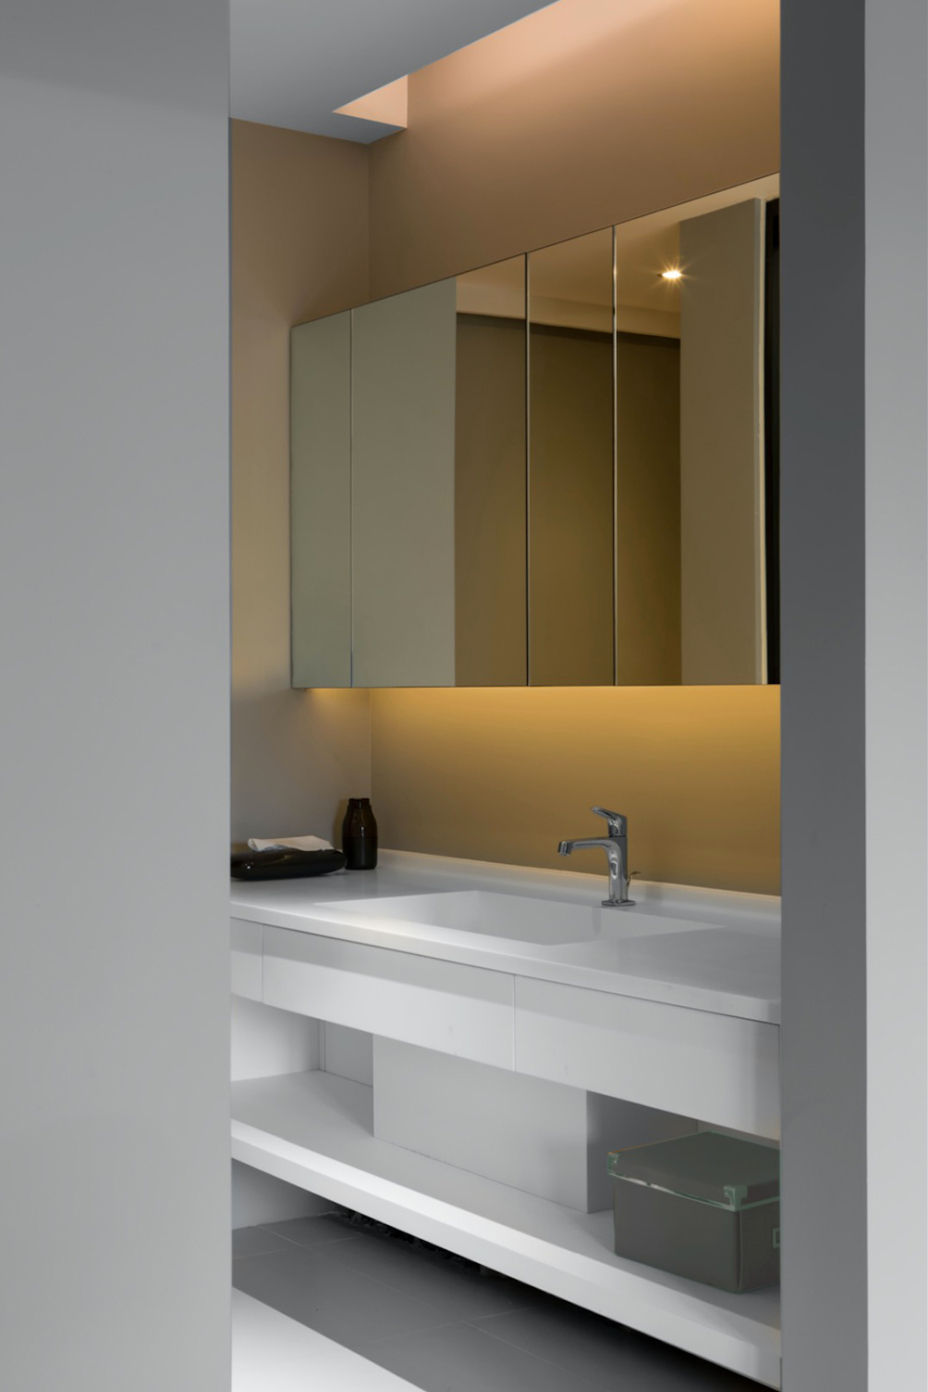 现代简约风格室内家装案例效果图-卫生间